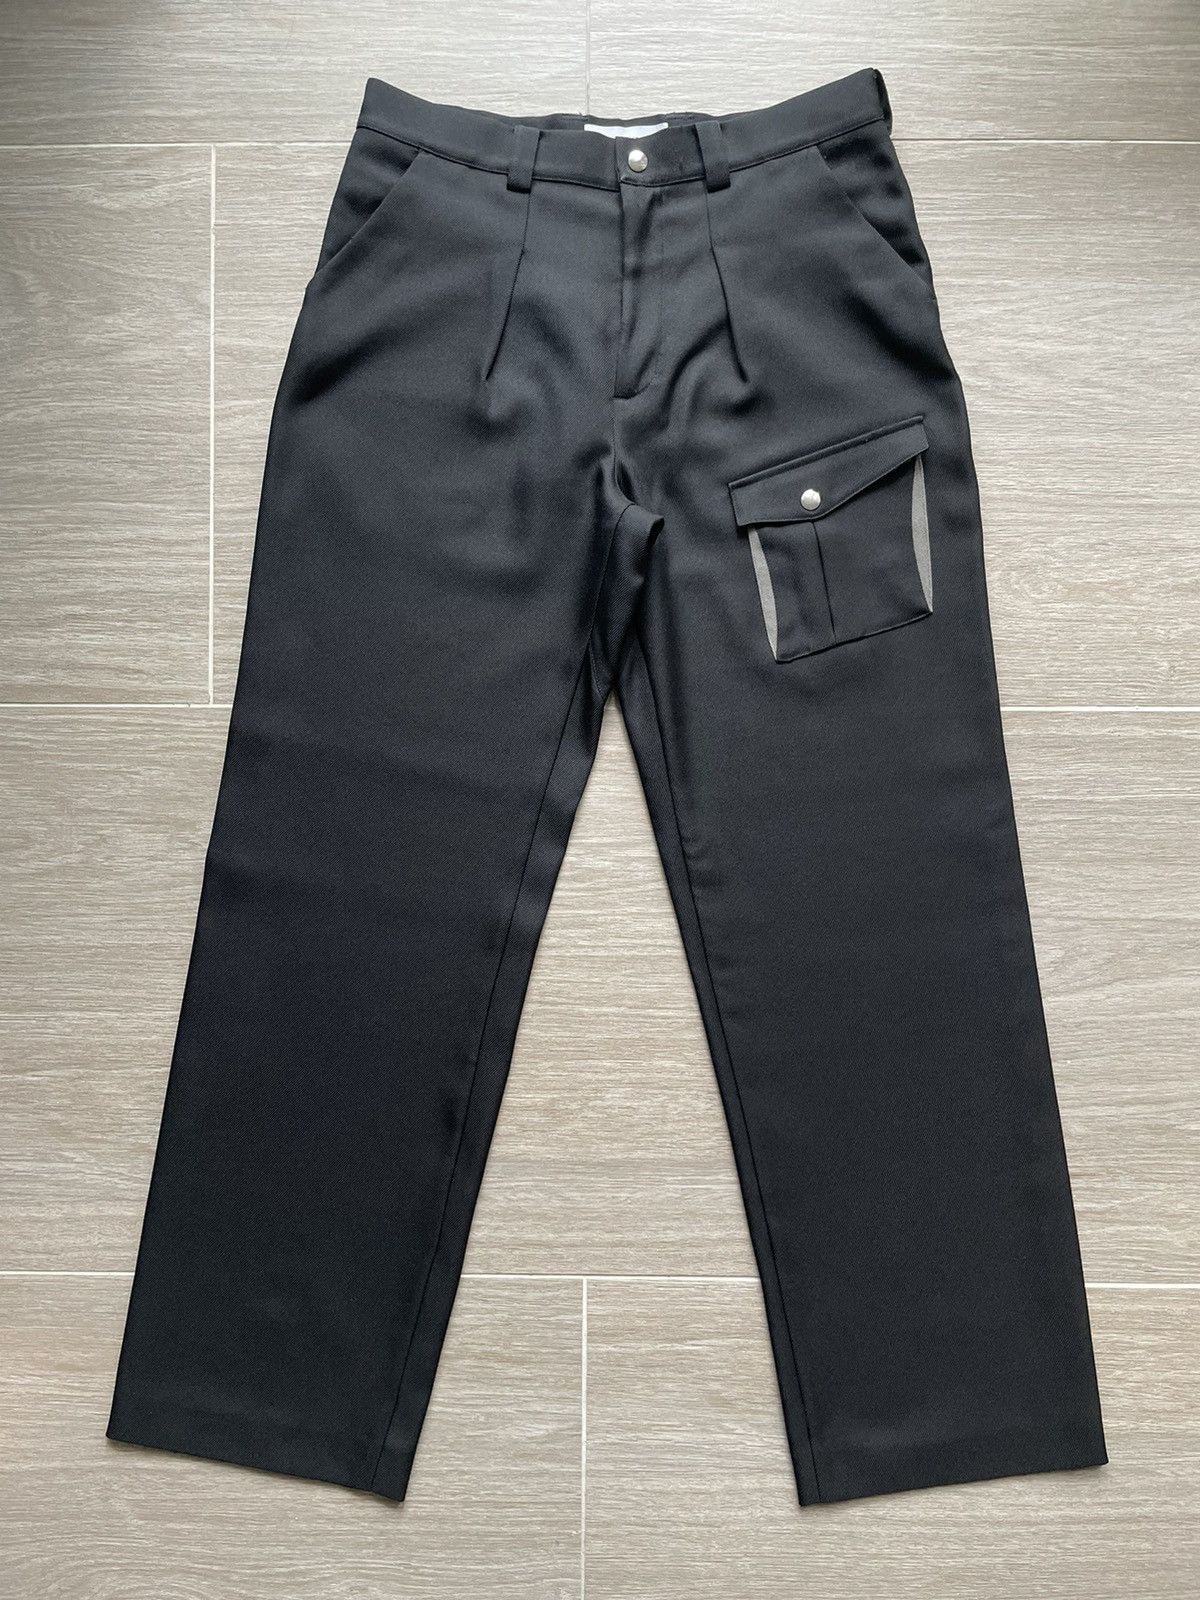 00062019 Kafka pocket trousers - パンツ